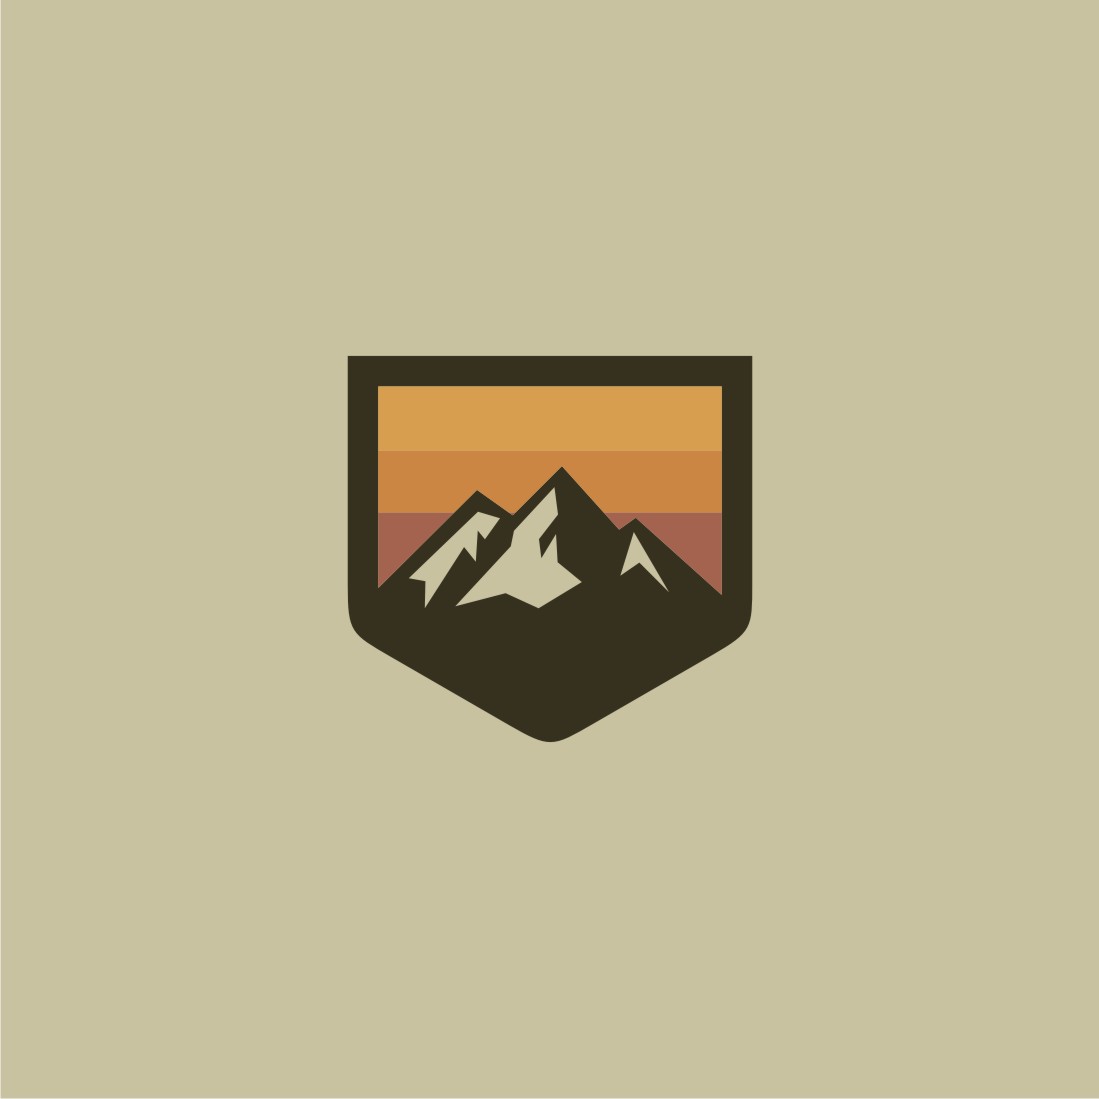 Beautiful Mountain Logo Set Shield Example.